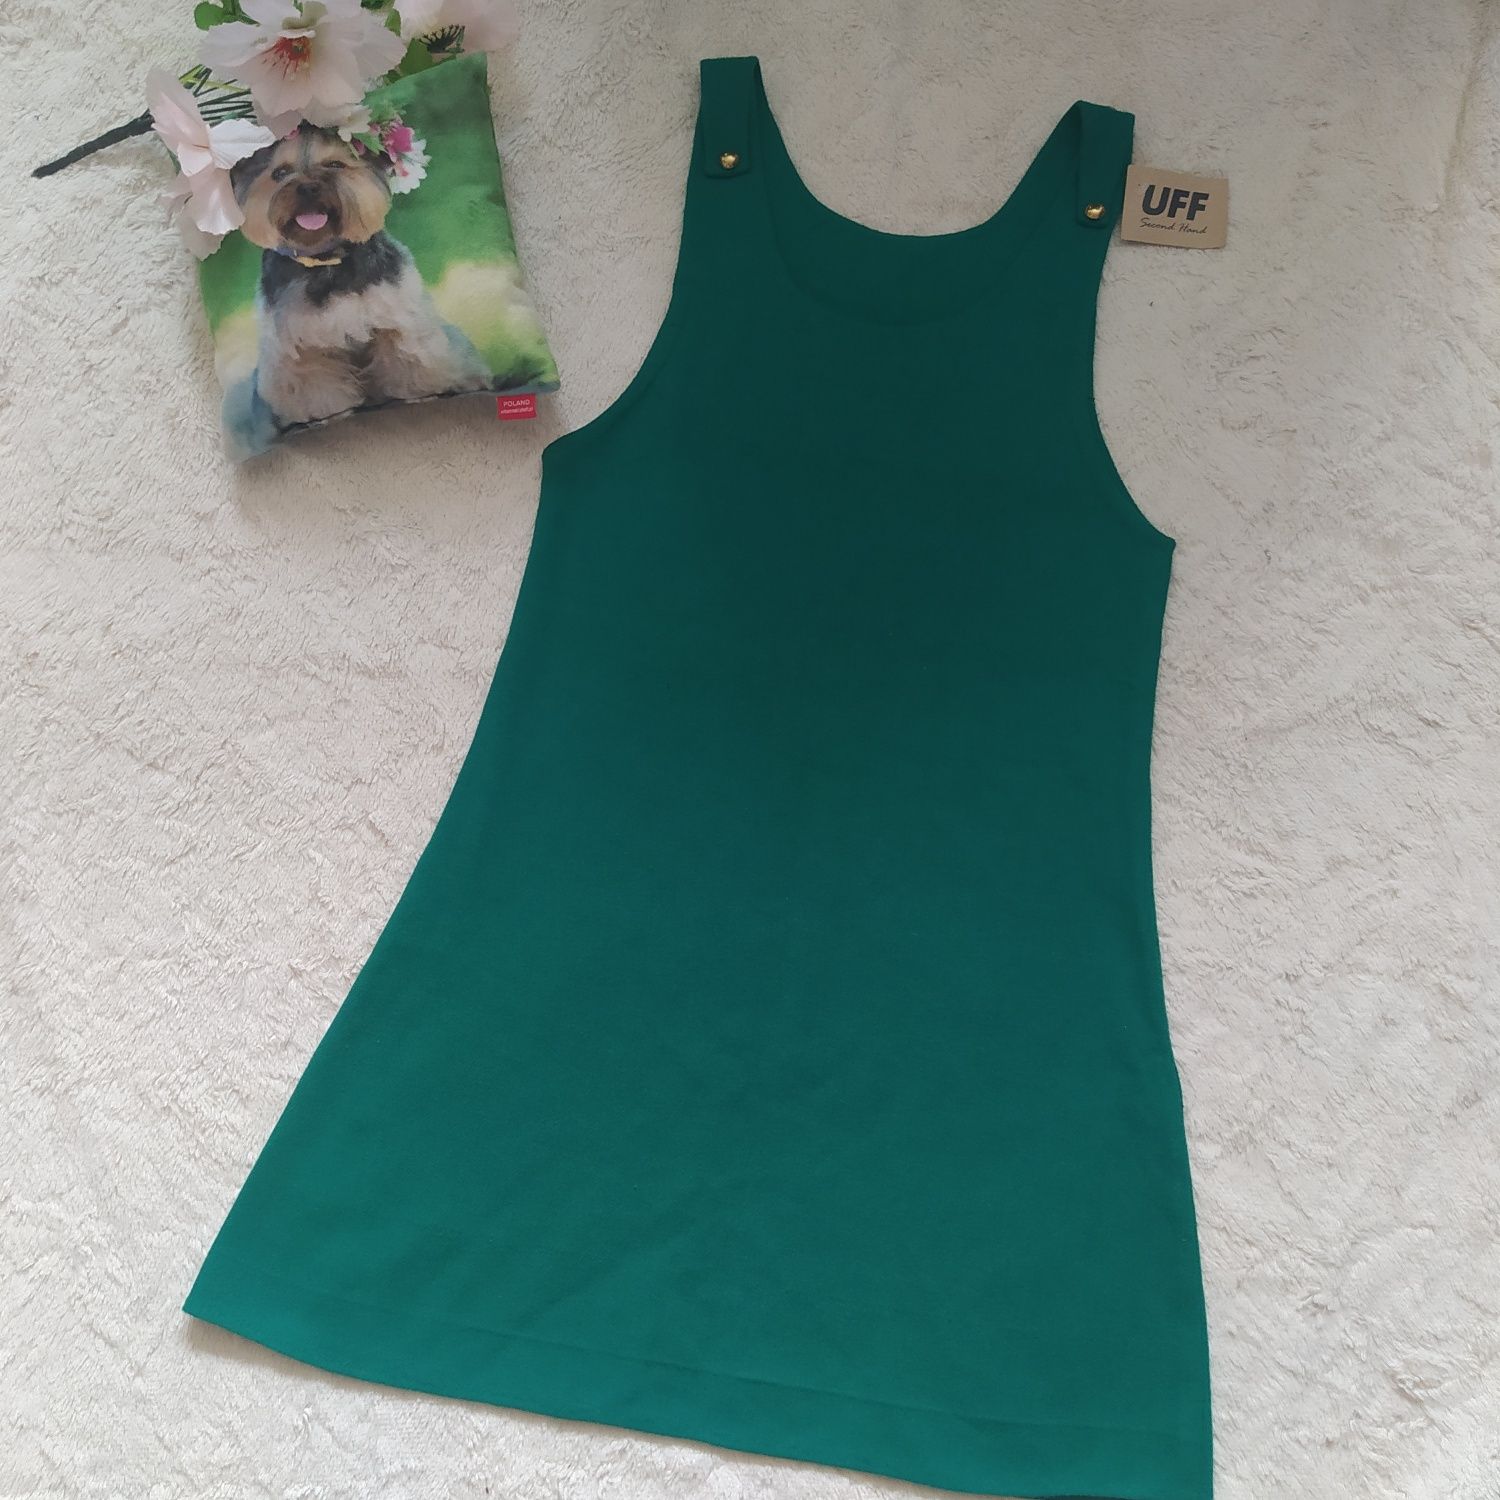 True vintage sukienka M 38 zielona złote guziki handmade nowa wełna ok